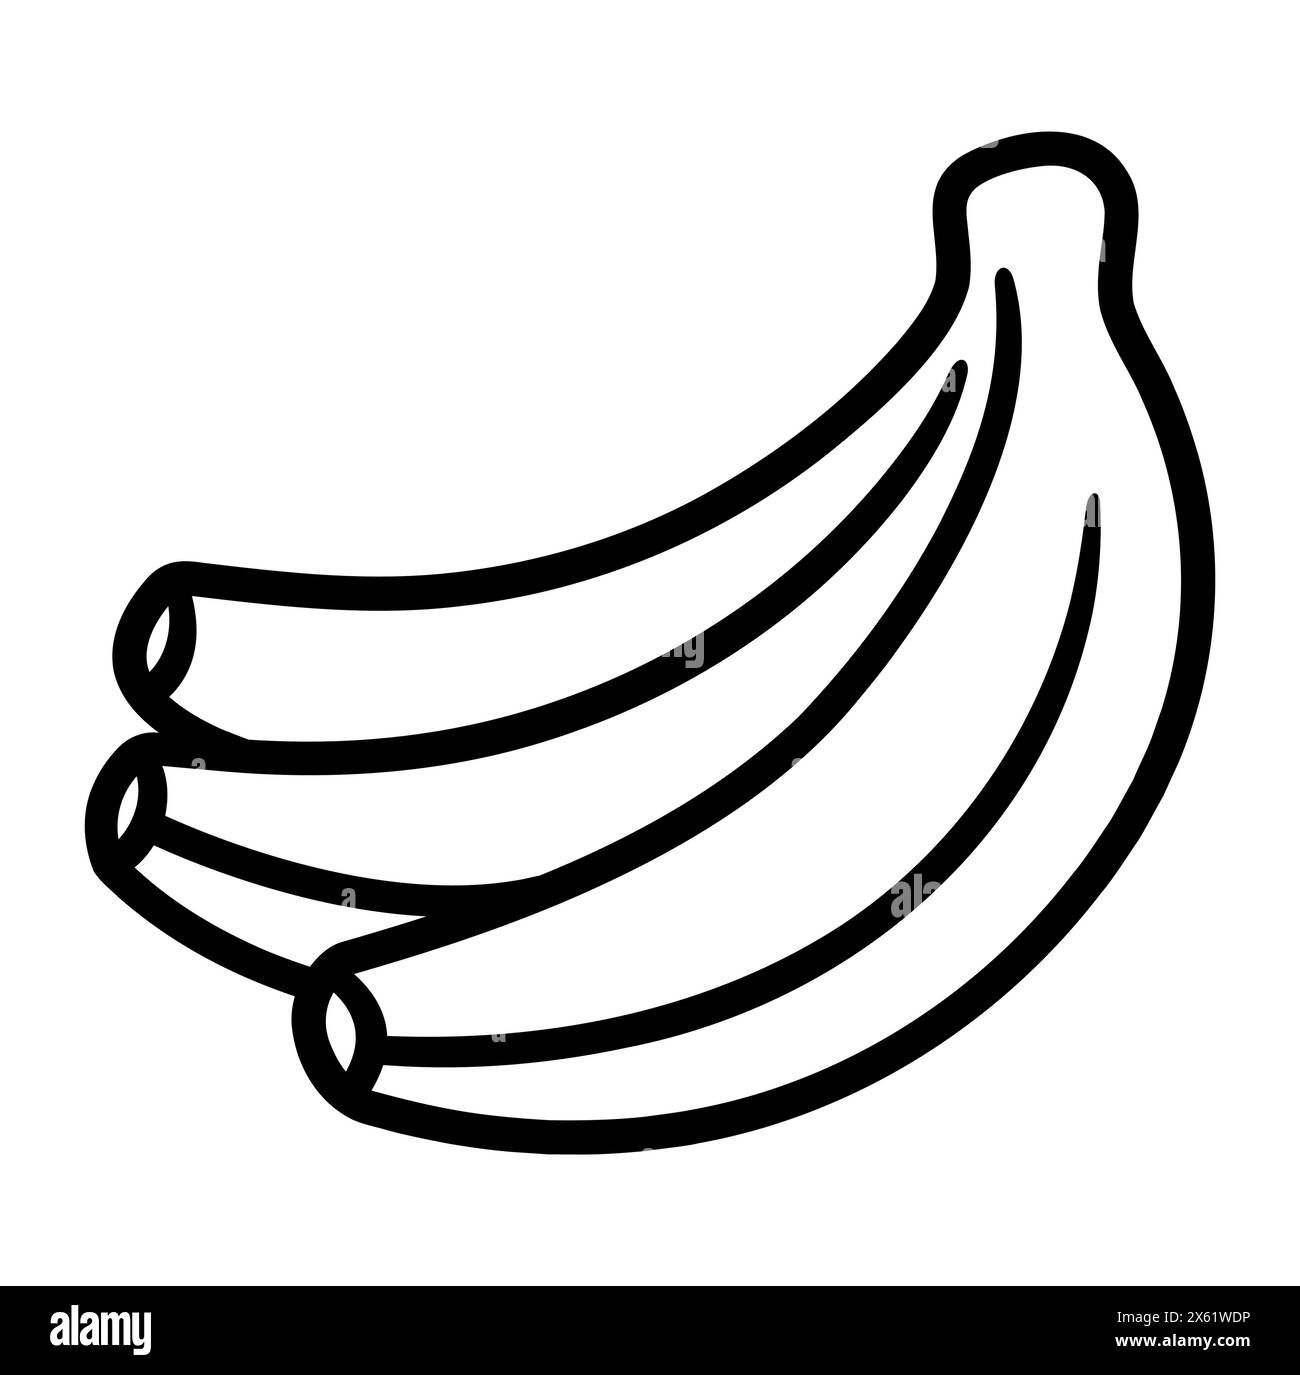 Icona a forma di banane disegnate a mano. Mazzo di banana bianco e nero. Disegno semplice, illustrazione grafica a clip vettoriale. Illustrazione Vettoriale